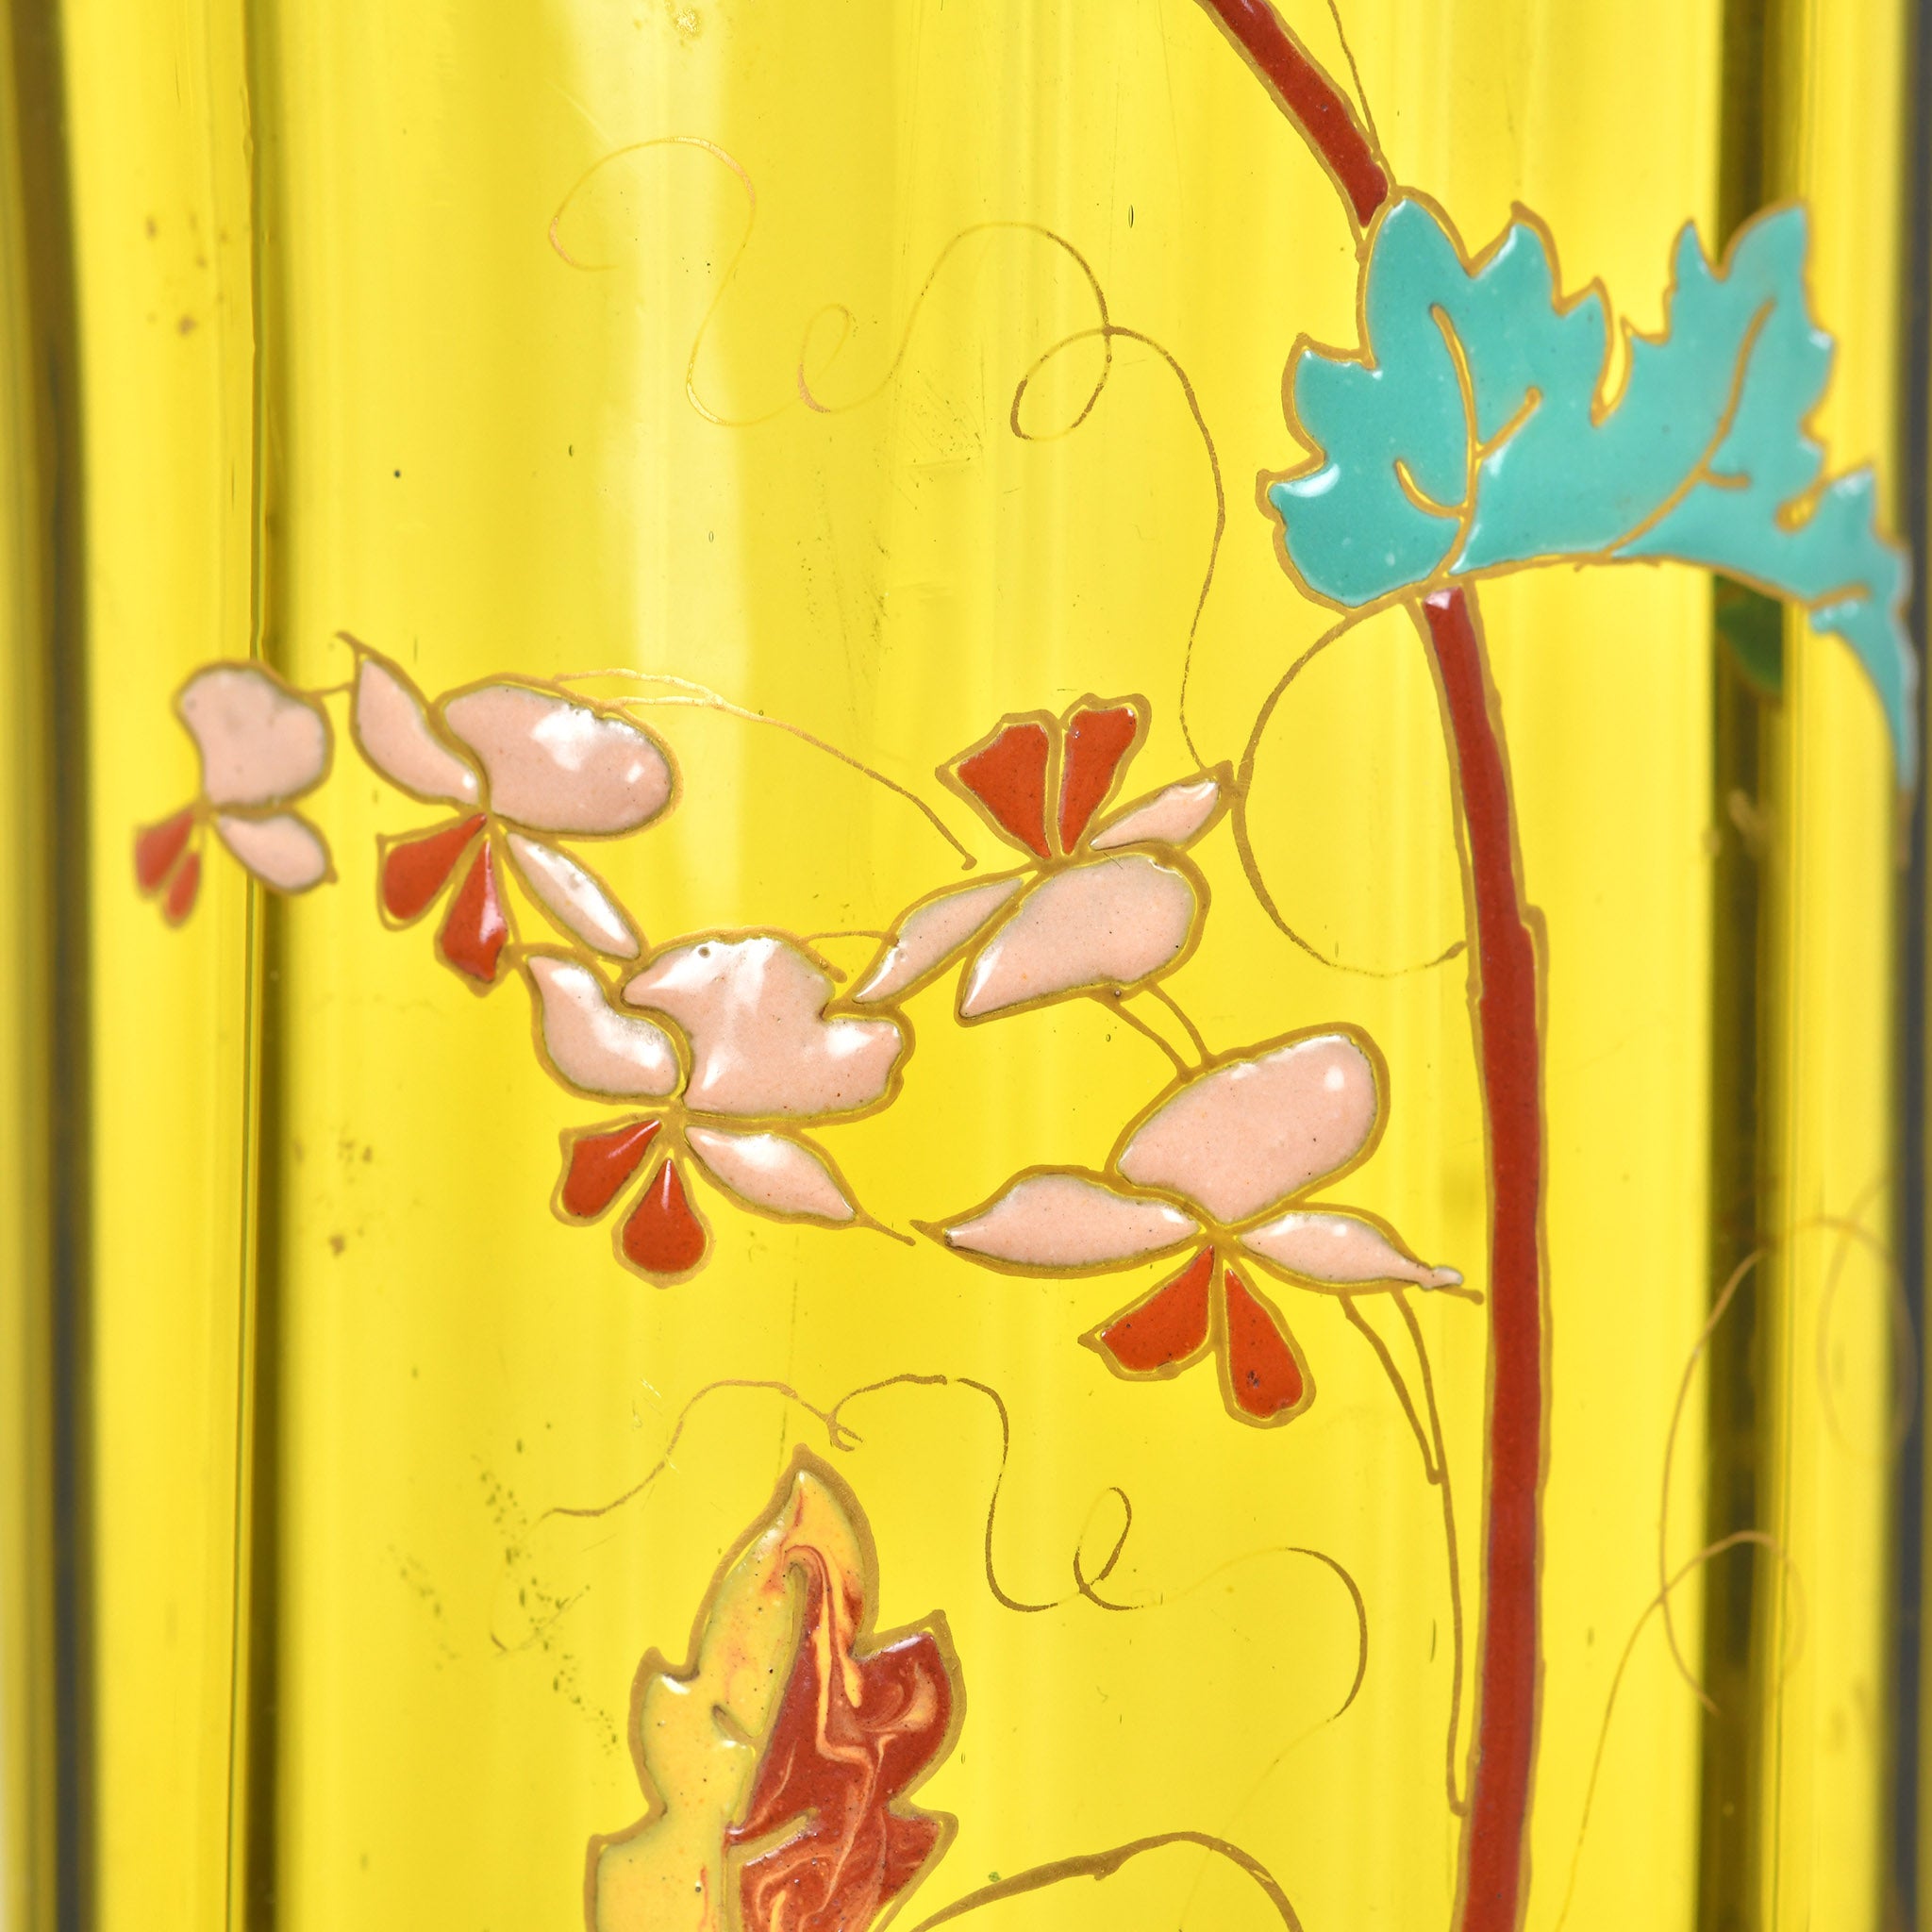 Gallé's botanical artwork on glass